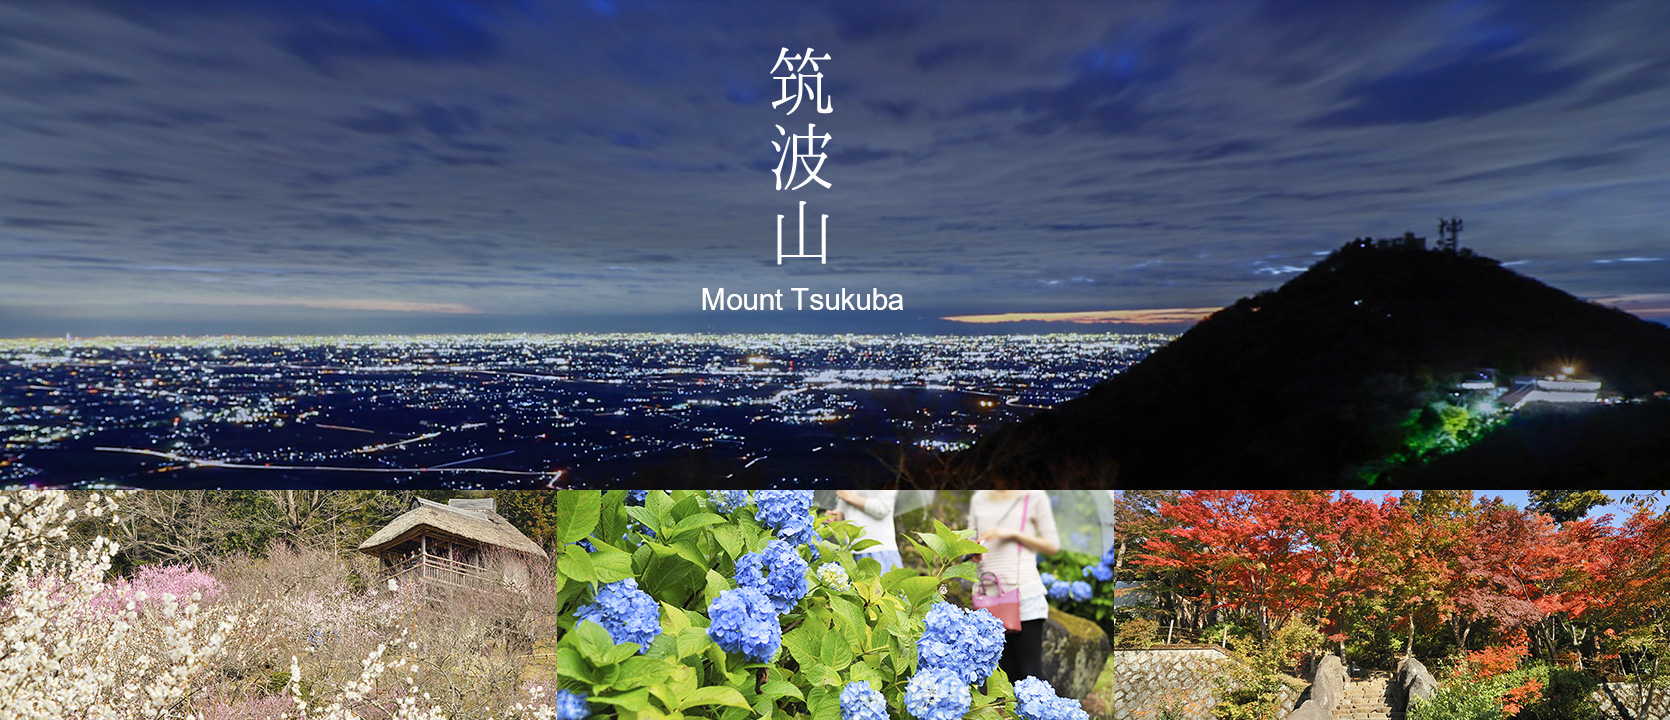 筑波山 Mount Tsukuba